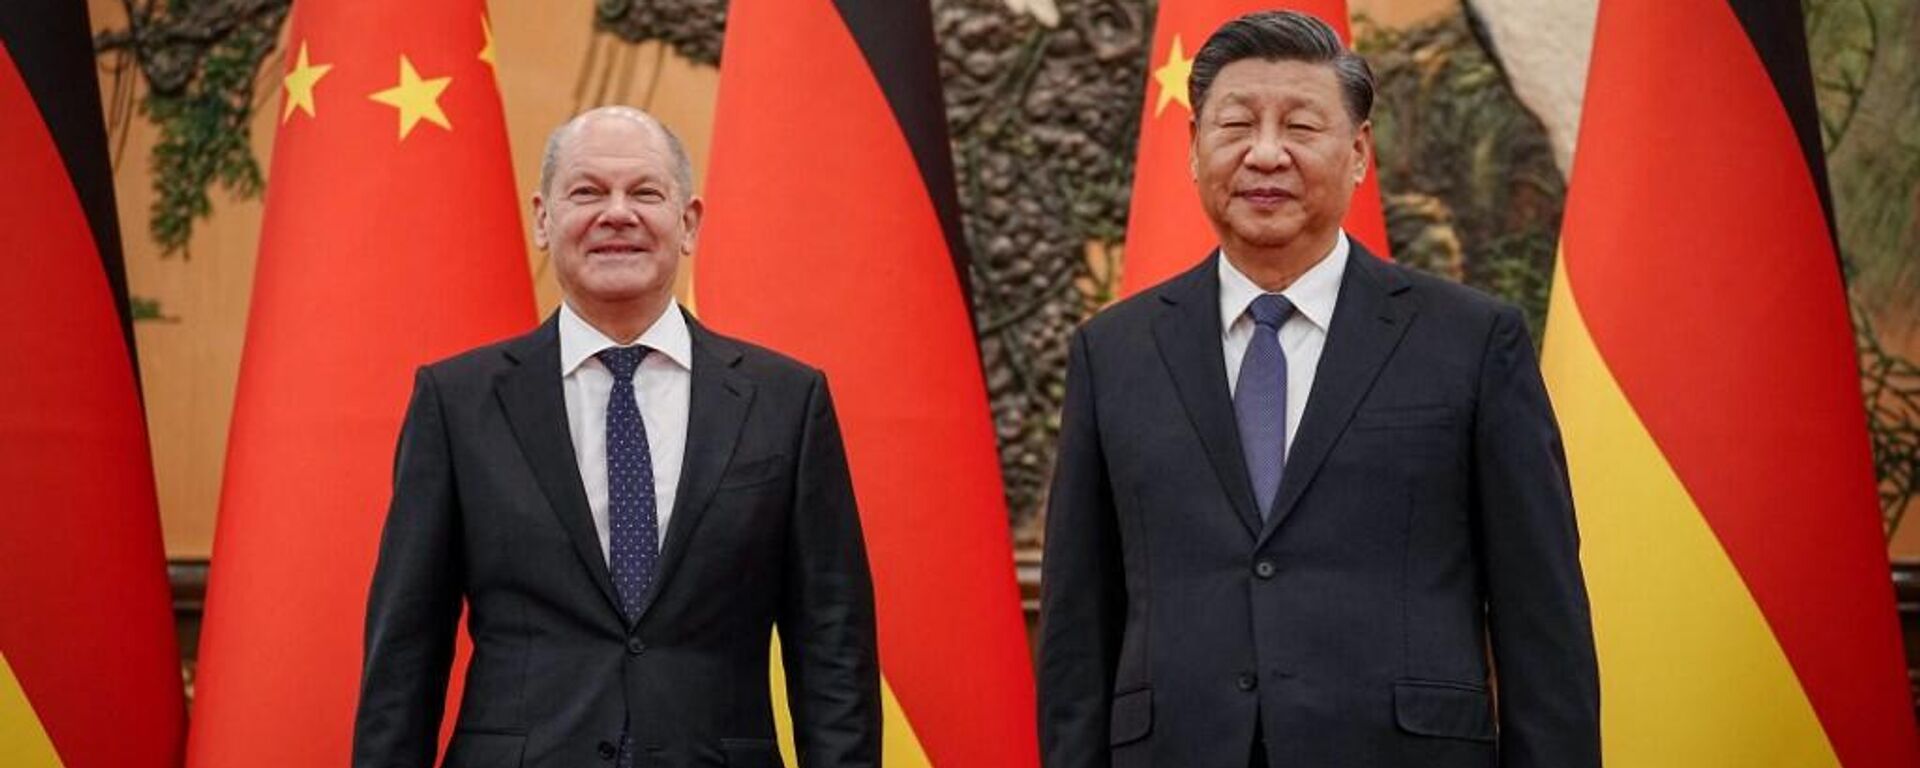 O presidente da China, Xi Jinping, recebe o chanceler da Alemanha, Olaf Scholz, no Grande Salão do Povo, em Pequim, em 4 de novembro de 2022 - Sputnik Brasil, 1920, 04.11.2022